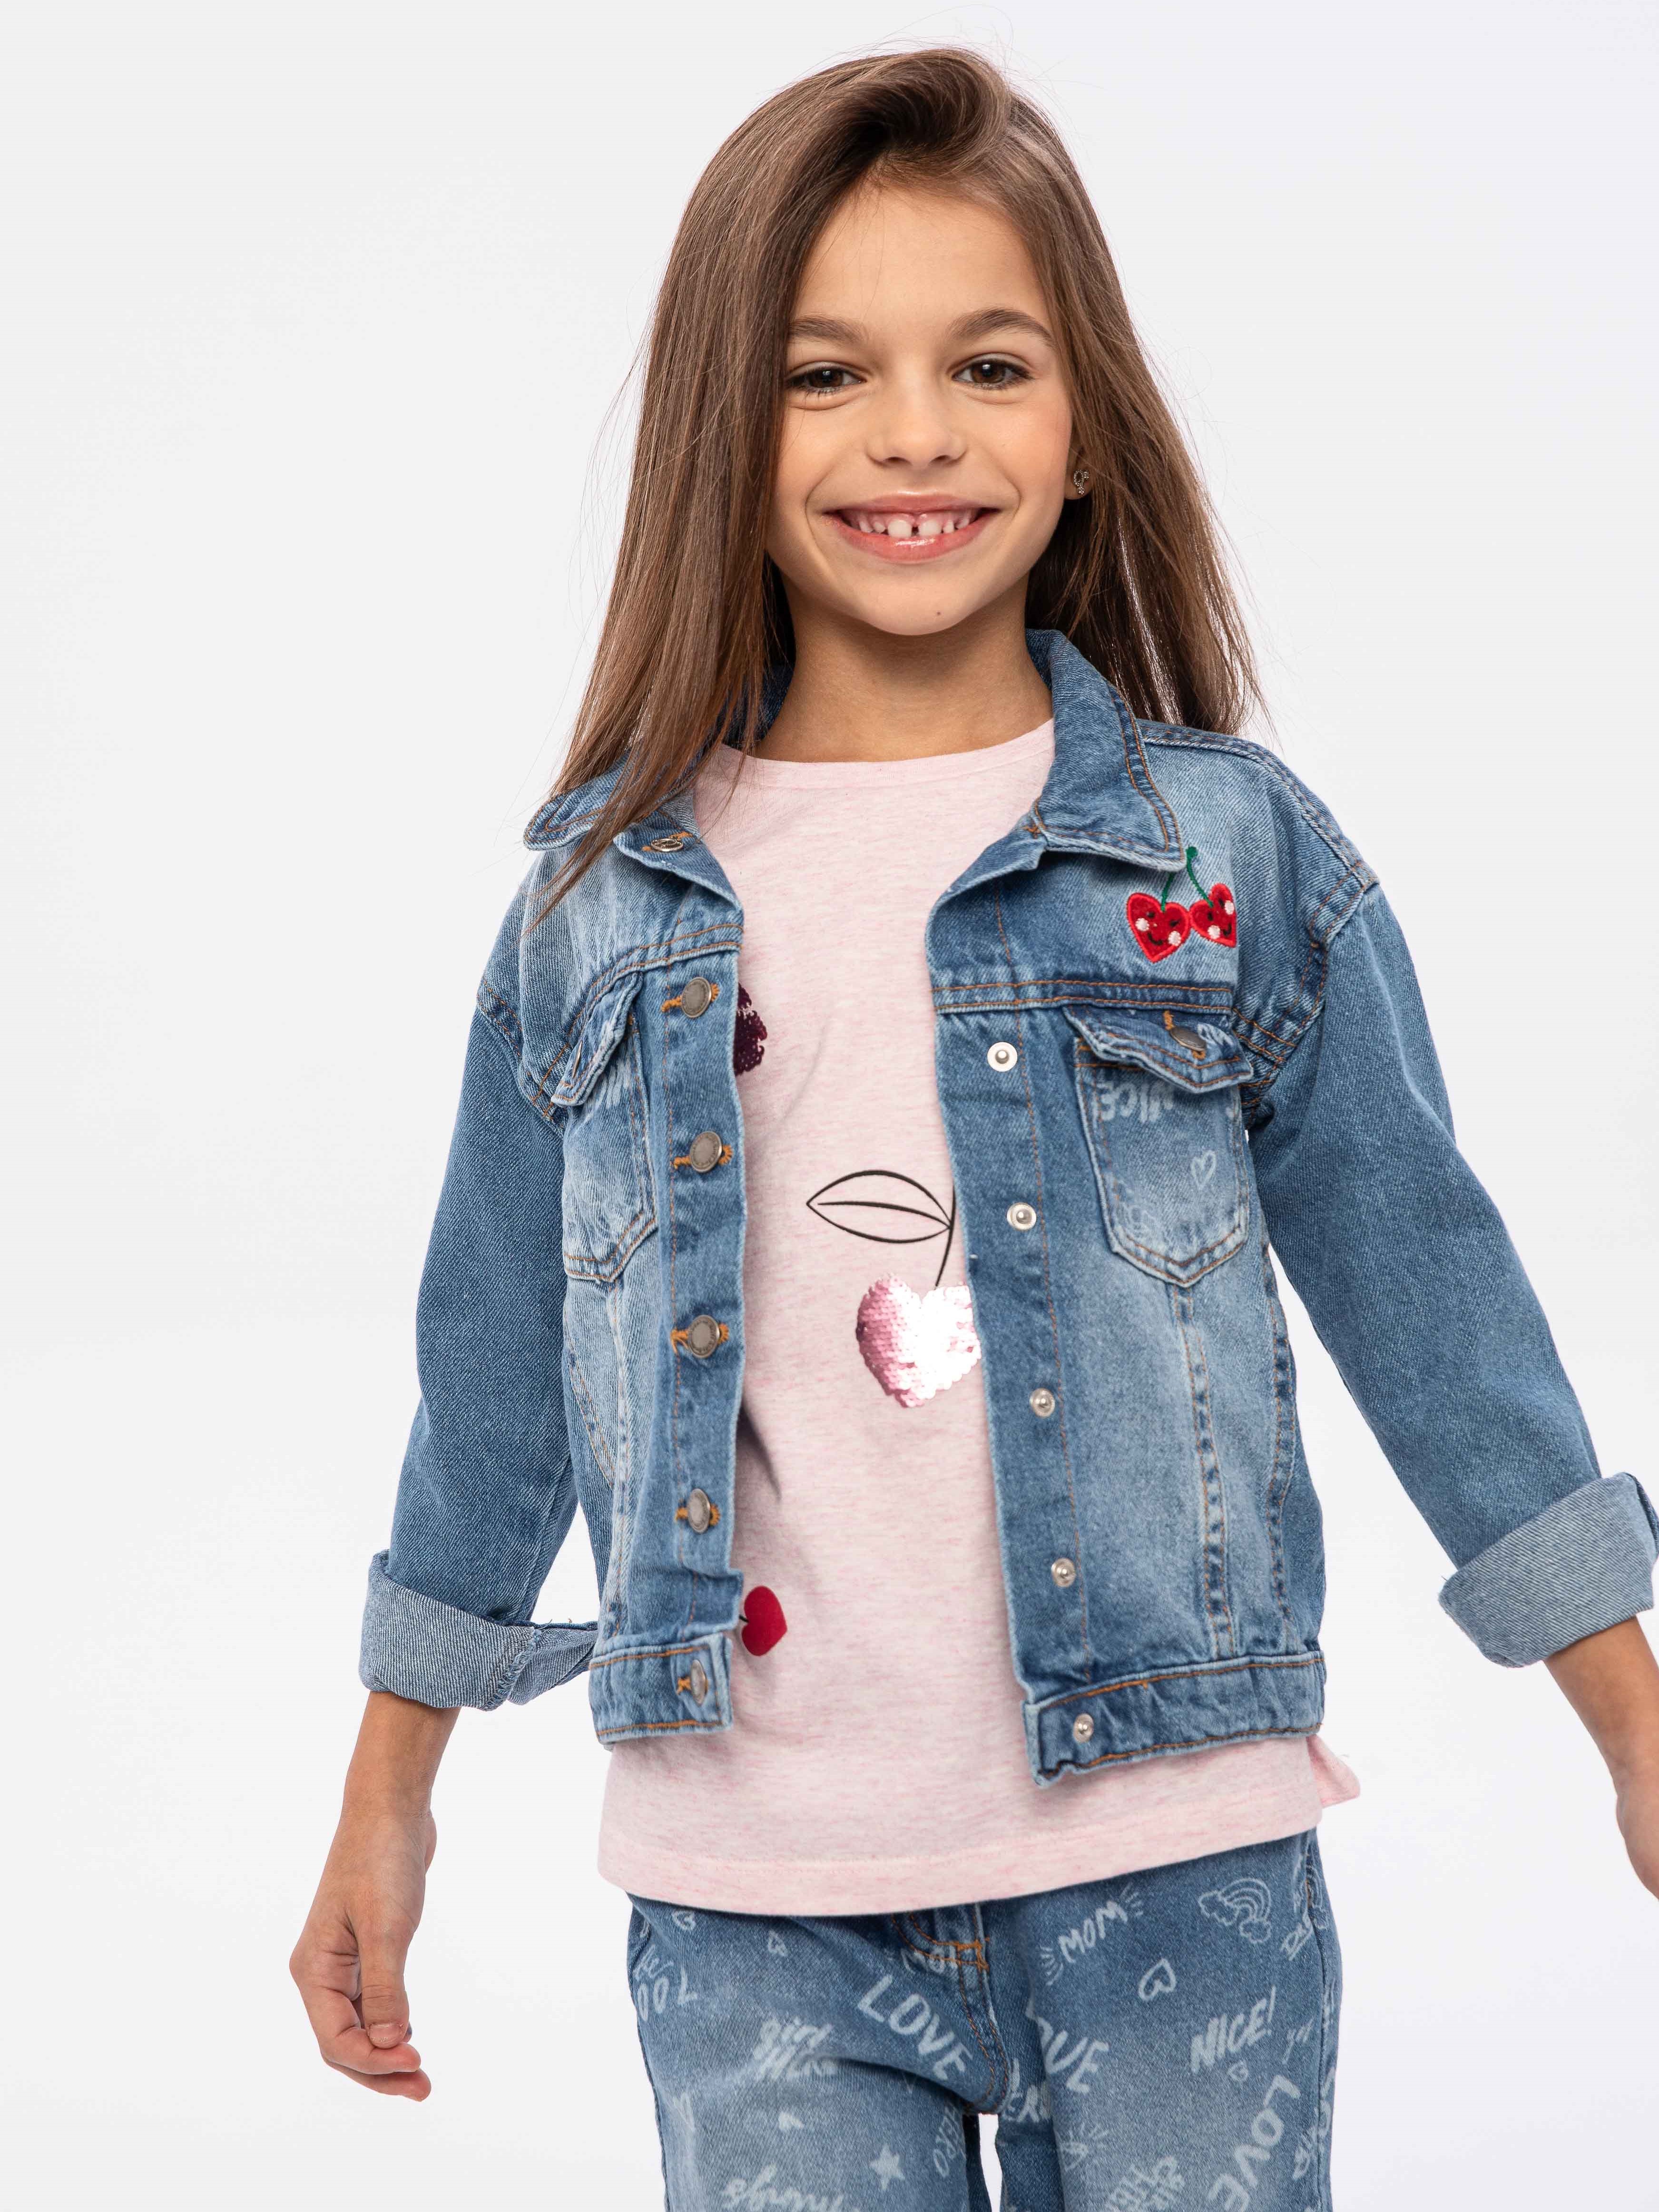 Джинсовые куртки для девочек – купить в интернет-магазине sela